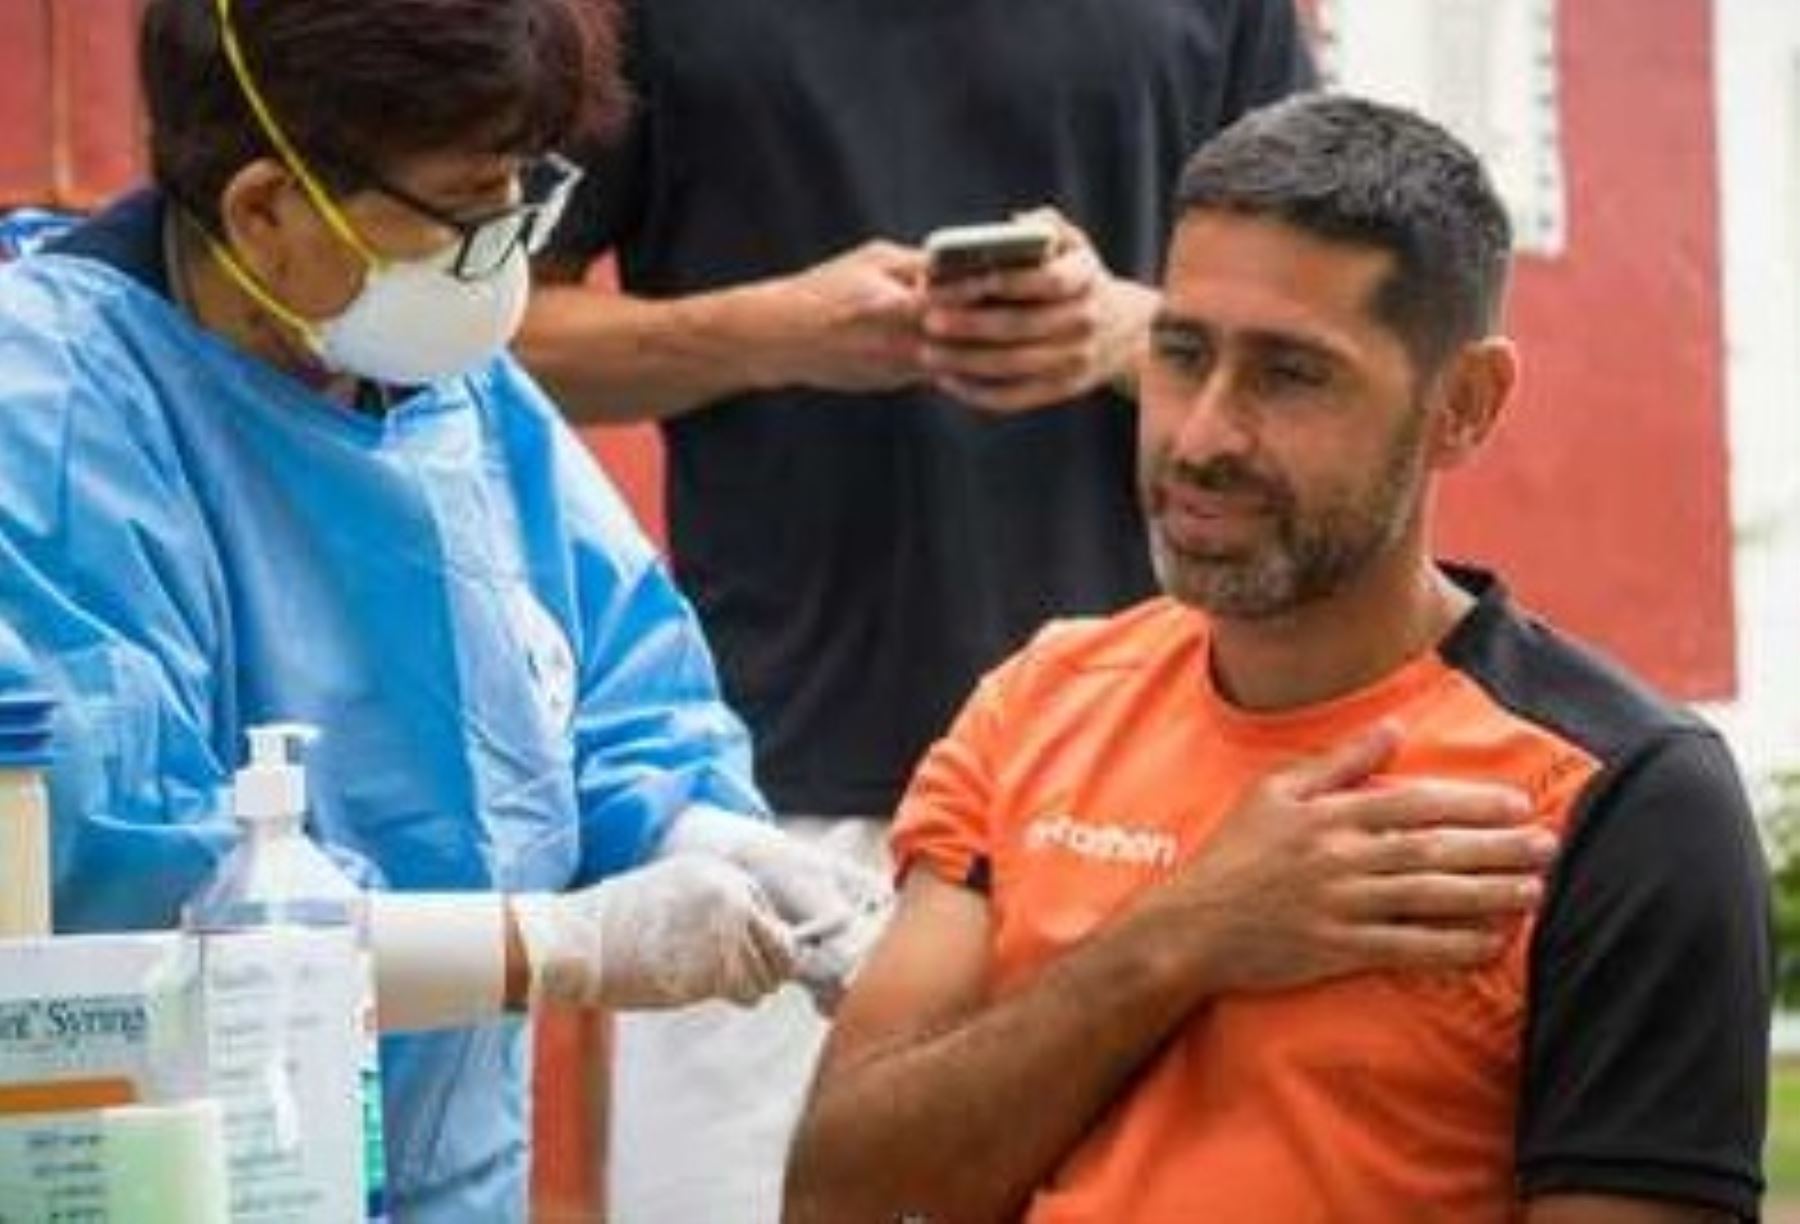 En Campo Mar U se llevó a cabo ó la vacunación a jugadores y trabajadores de Universitario de Deportes contra la influenza, fiebre amarilla y covid-19. Foto: Minsa.